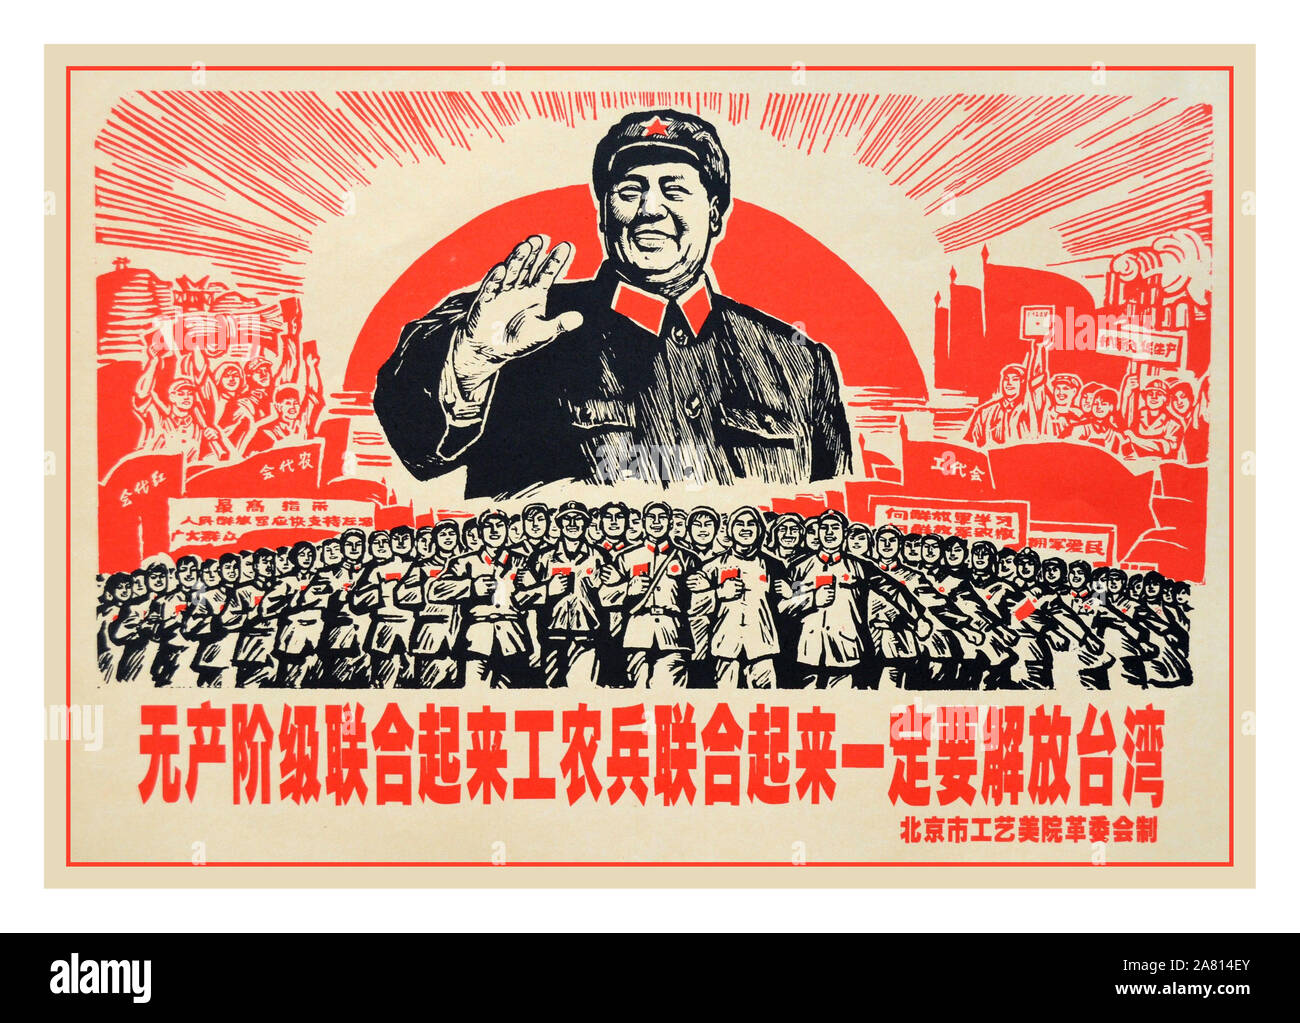 Vintage 1950er-Vorsitzender Mao Propaganda Poster, mit der Überschrift „THE PROLETARIAT UNITE, ARBEITER, BAUERN UND SOLDATEN VEREINEN SICH, UM TAIWAN ZU BEFREIEN“ Volksrepublik China (PRC), Kulturrevolution China Kulturgeschichte Vintage Poster kommunistische Propaganda Poster Illustrationen Stockfoto